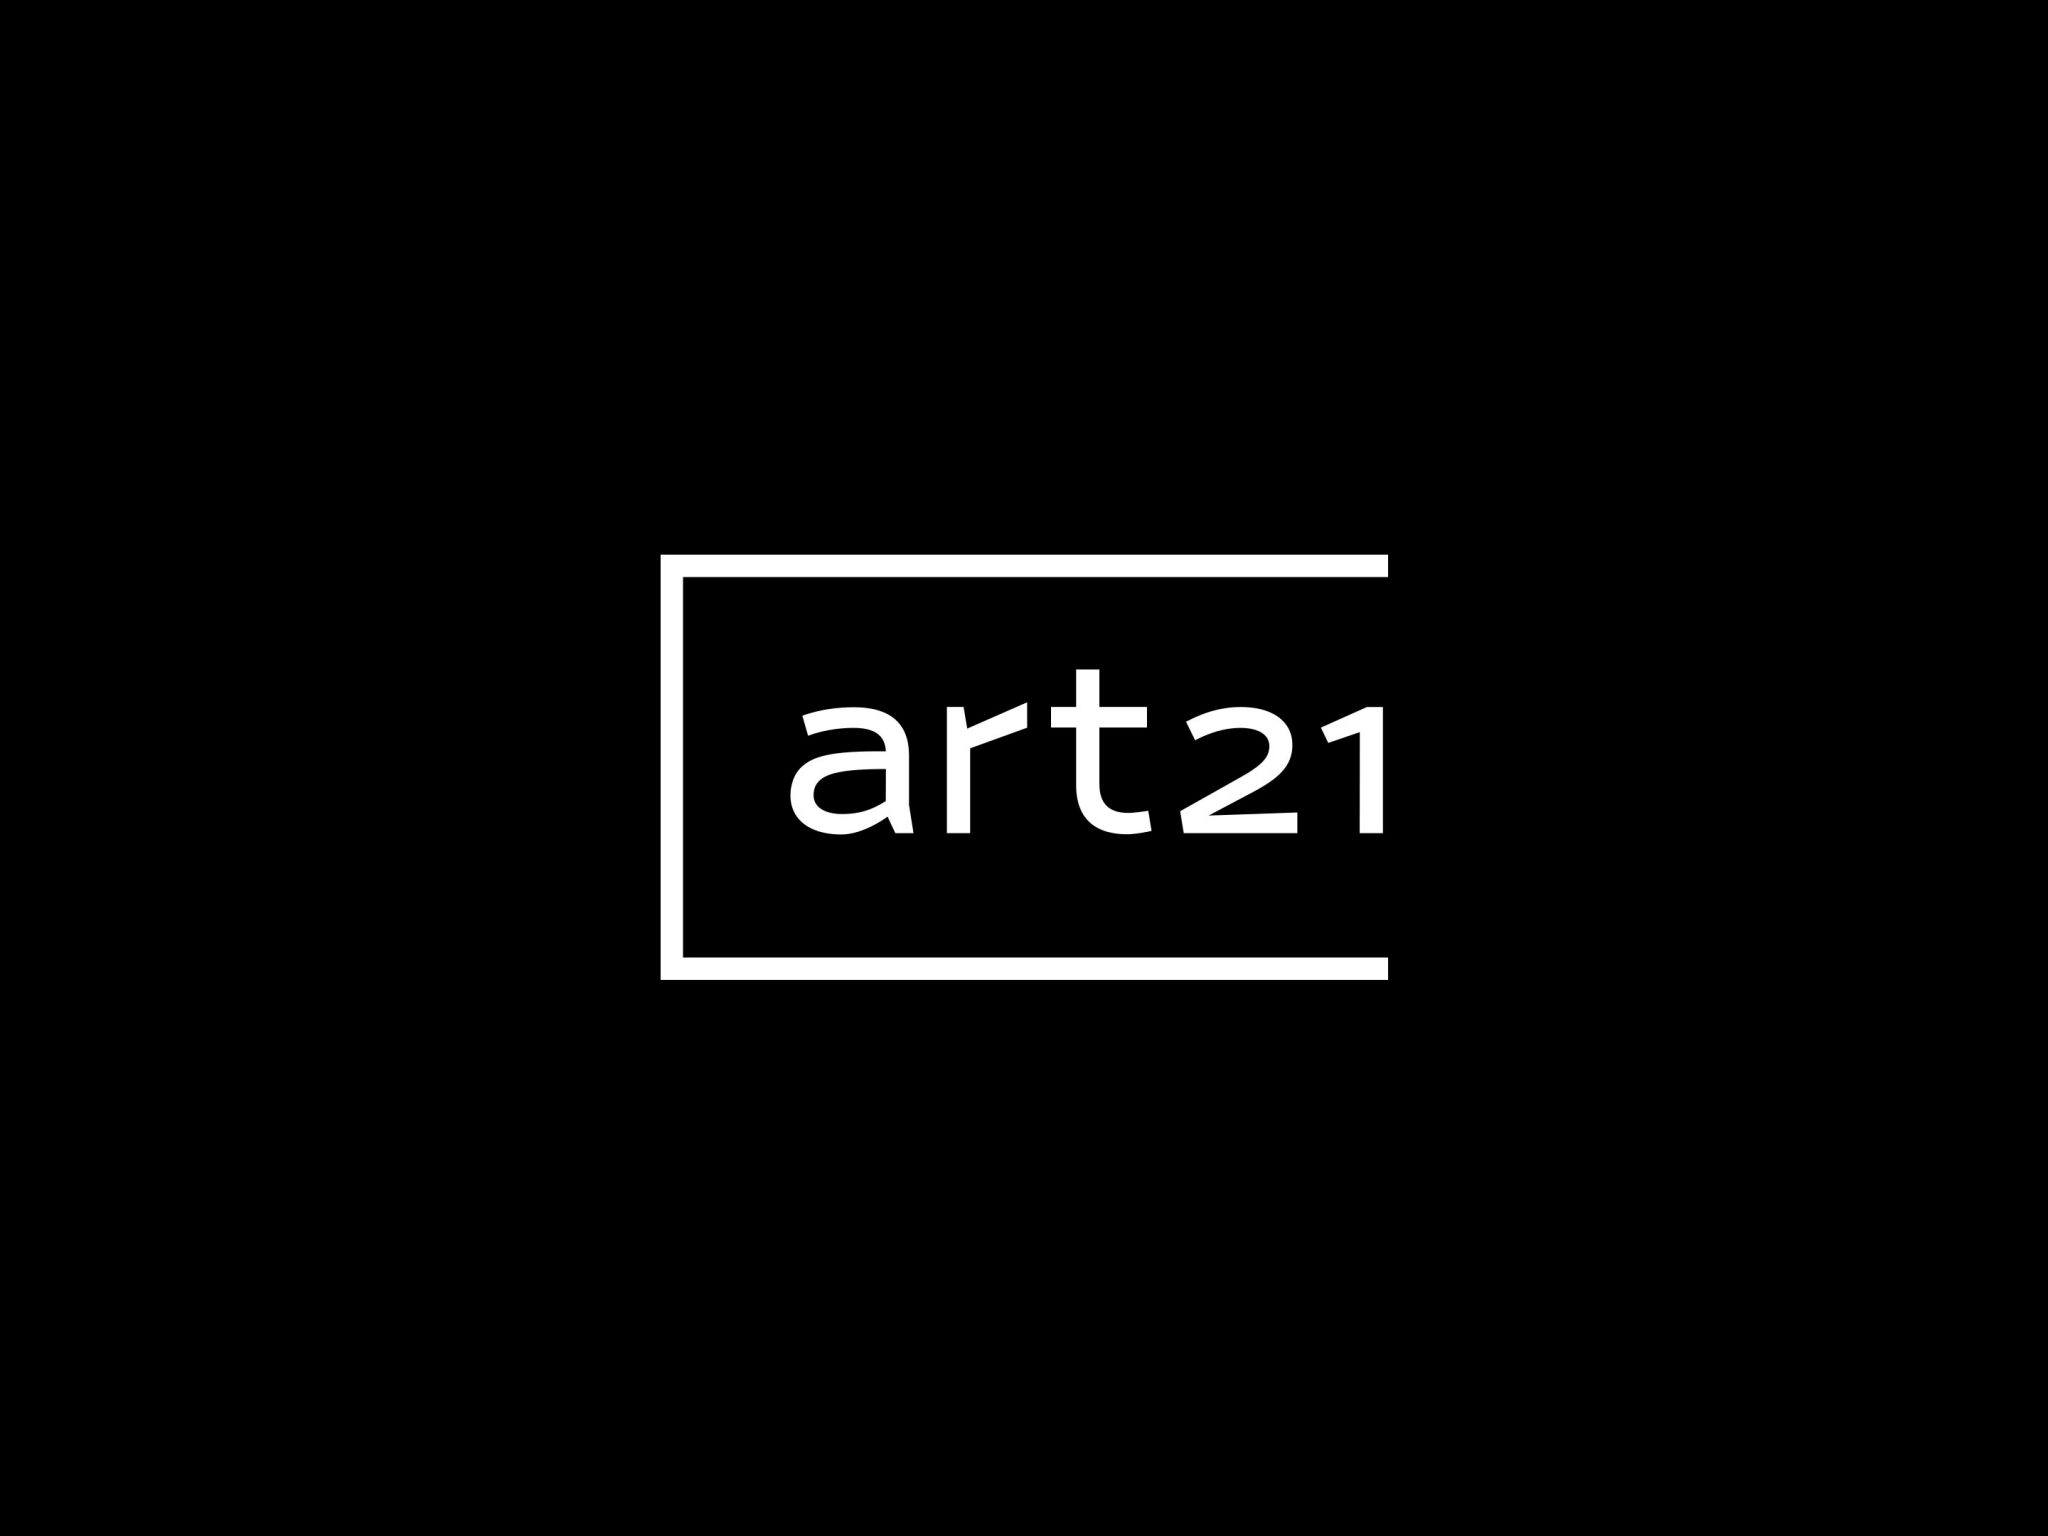 art21 logo on black